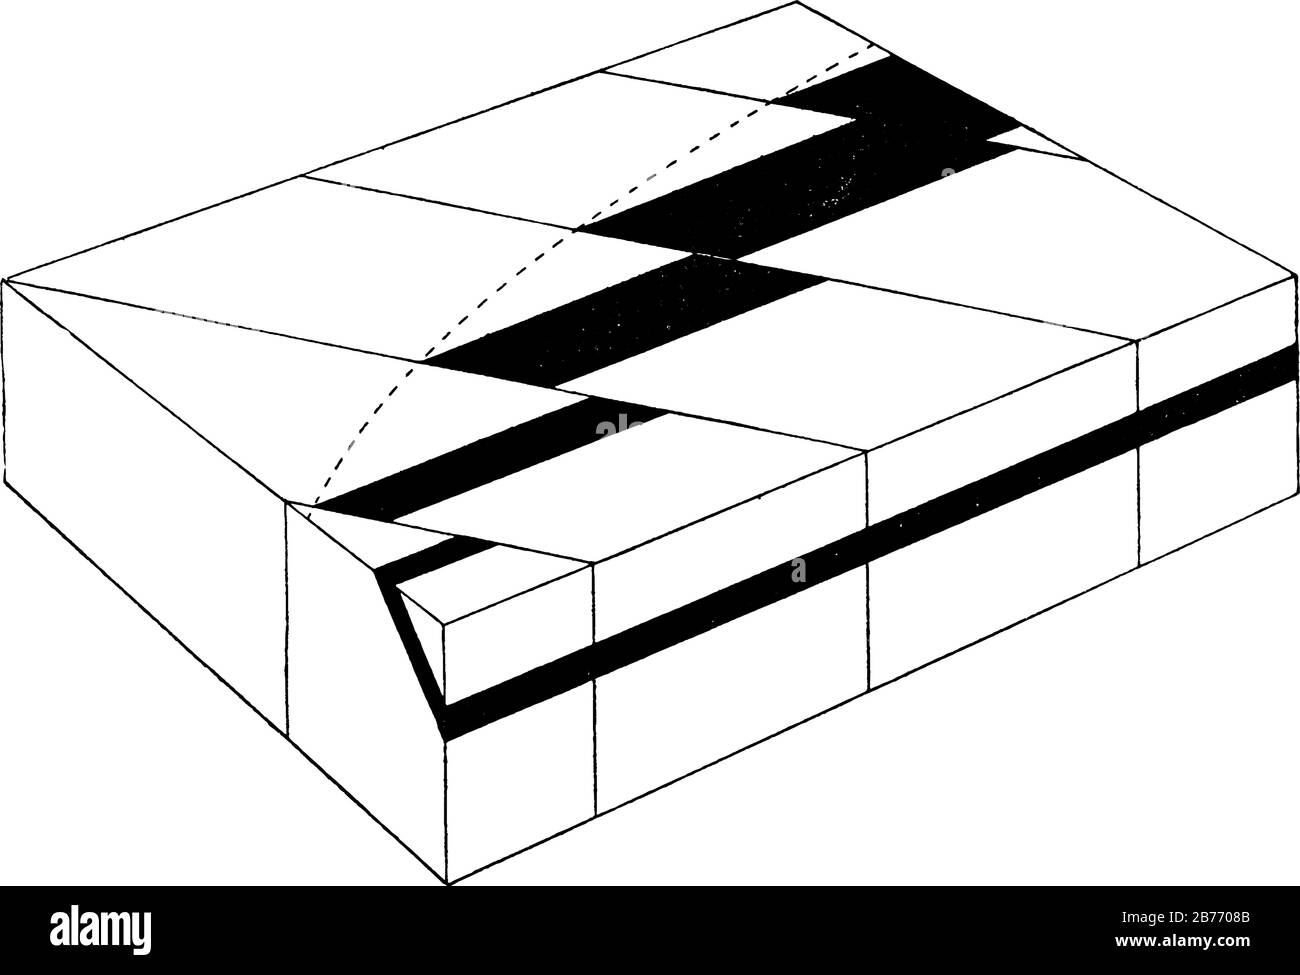 Diagramme illustrant le décalage crescentitique des affleurements (exposition visible du substrat rocheux) en raison de l'inclinaison progressivement croissante des blocs orographiques, vi Illustration de Vecteur